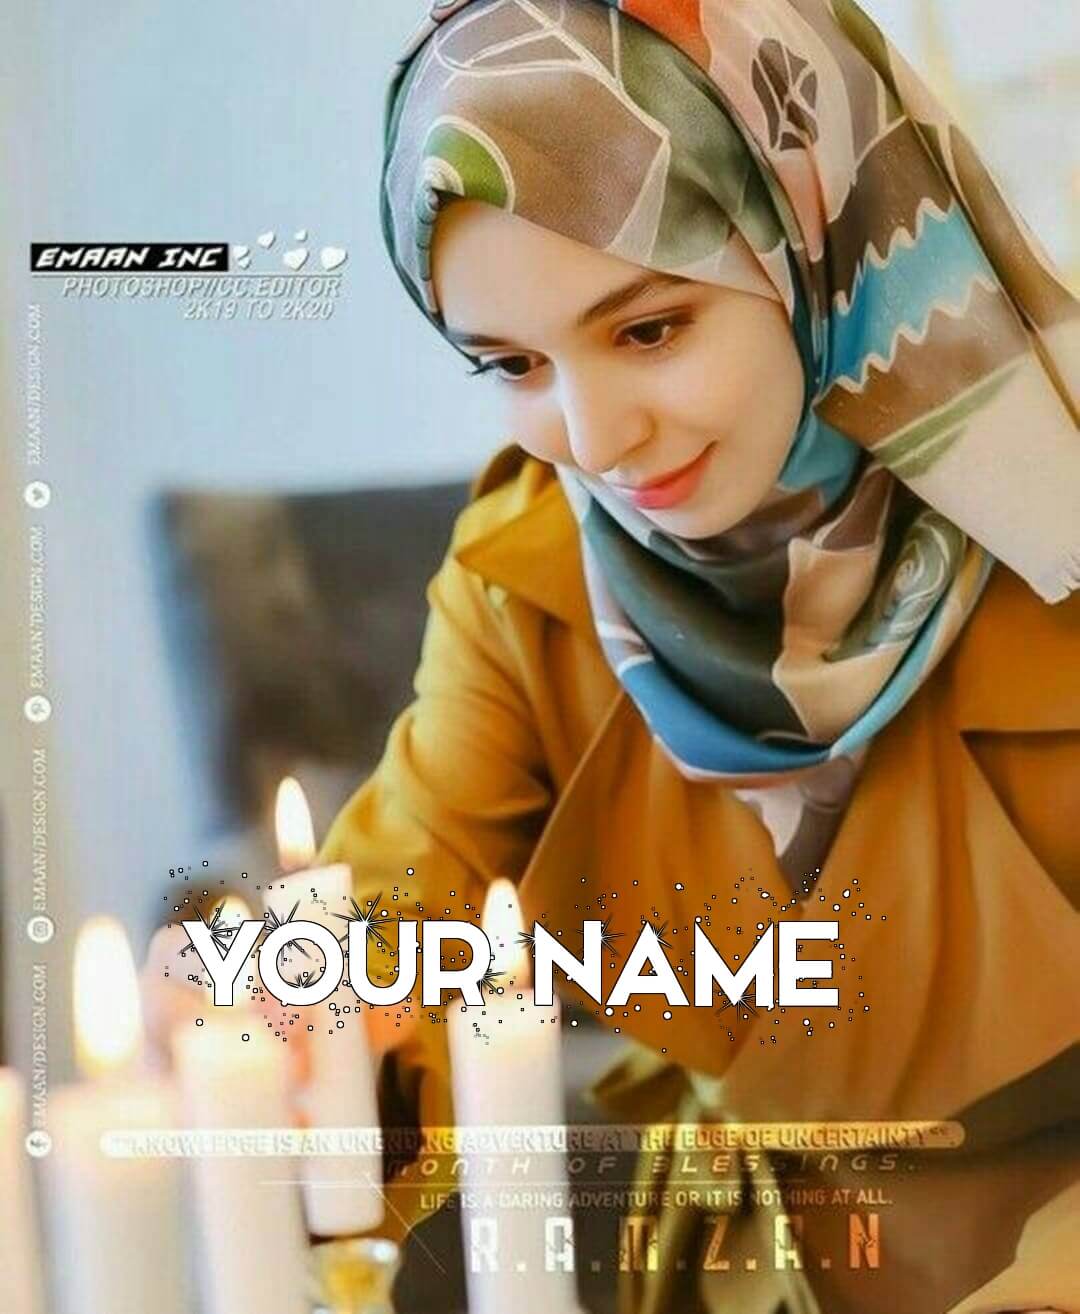 Instagram Islamic Queen Dp For Muslim Girls